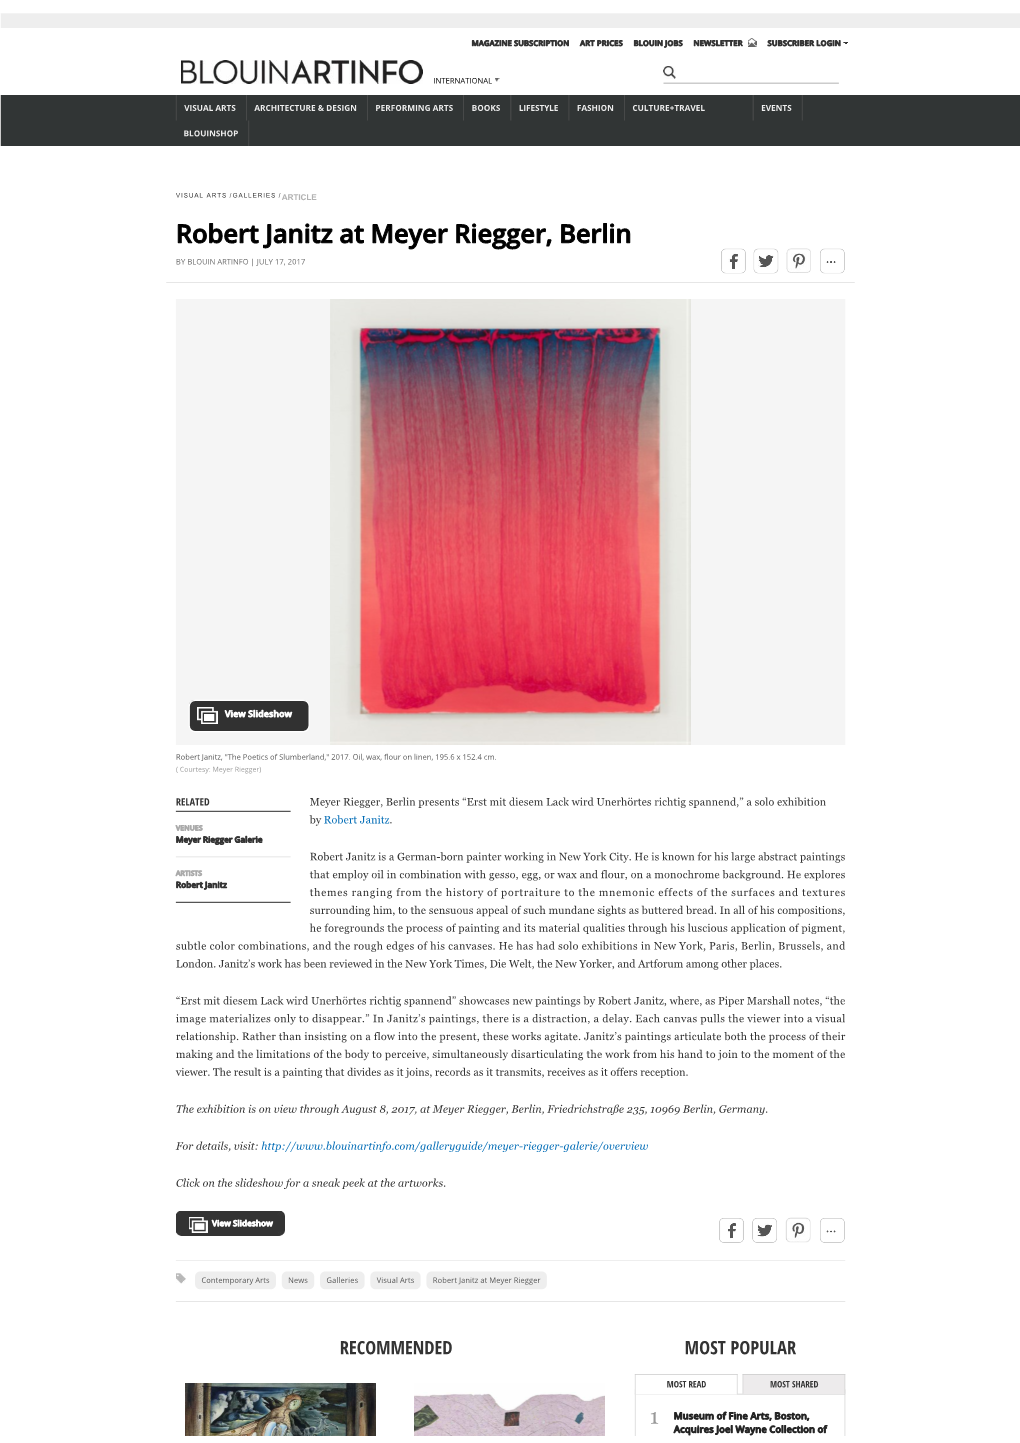 Robert Janitz at Meyer Riegger, Berlin | BLOUIN ARTINFO